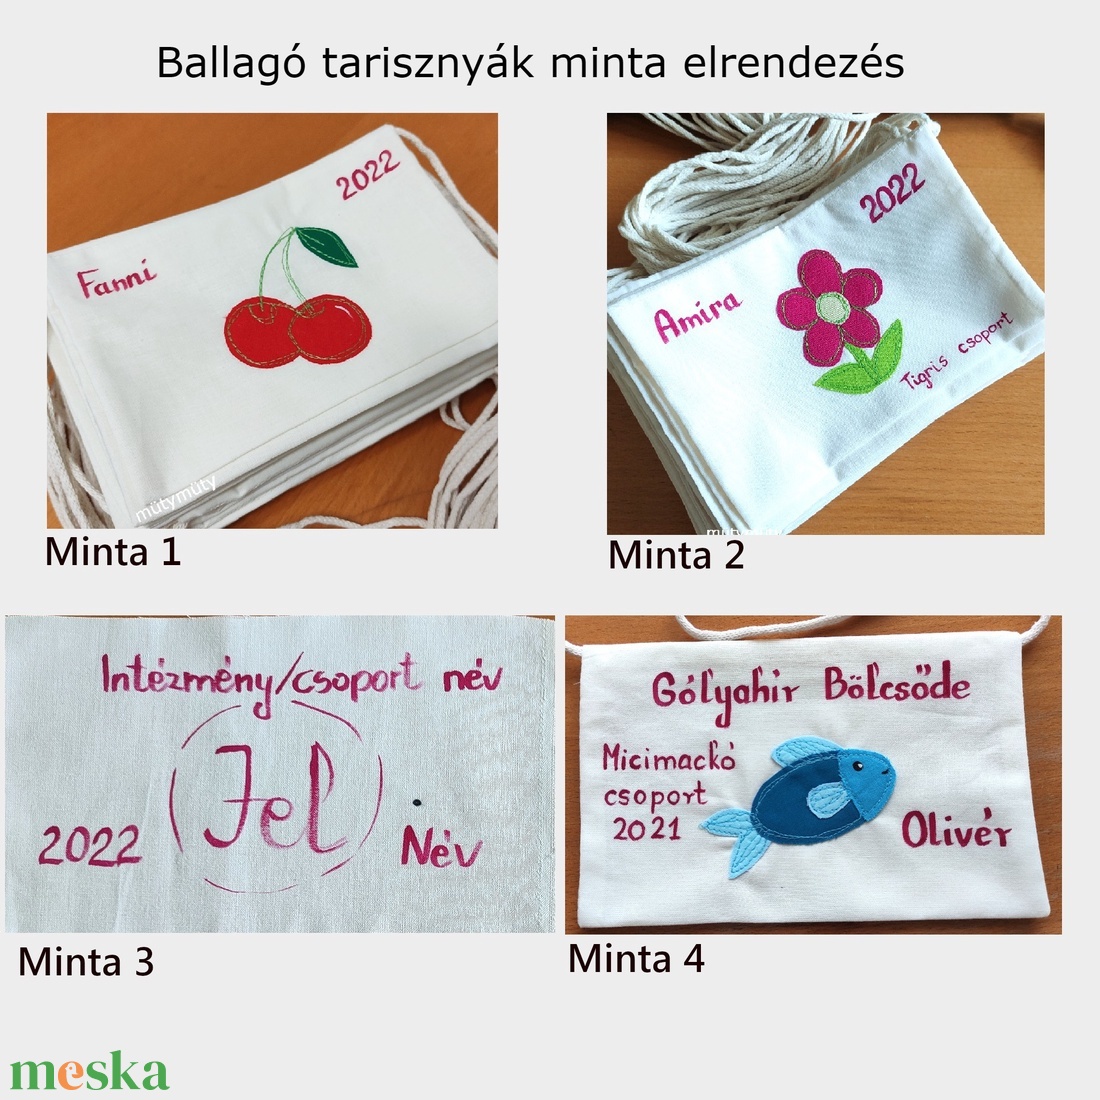 Ballagó tarisznya, ballagási tarisznya, óvodai, bölcsődei, névre szóló - táska & tok - kézitáska & válltáska - tarisznya - Meska.hu